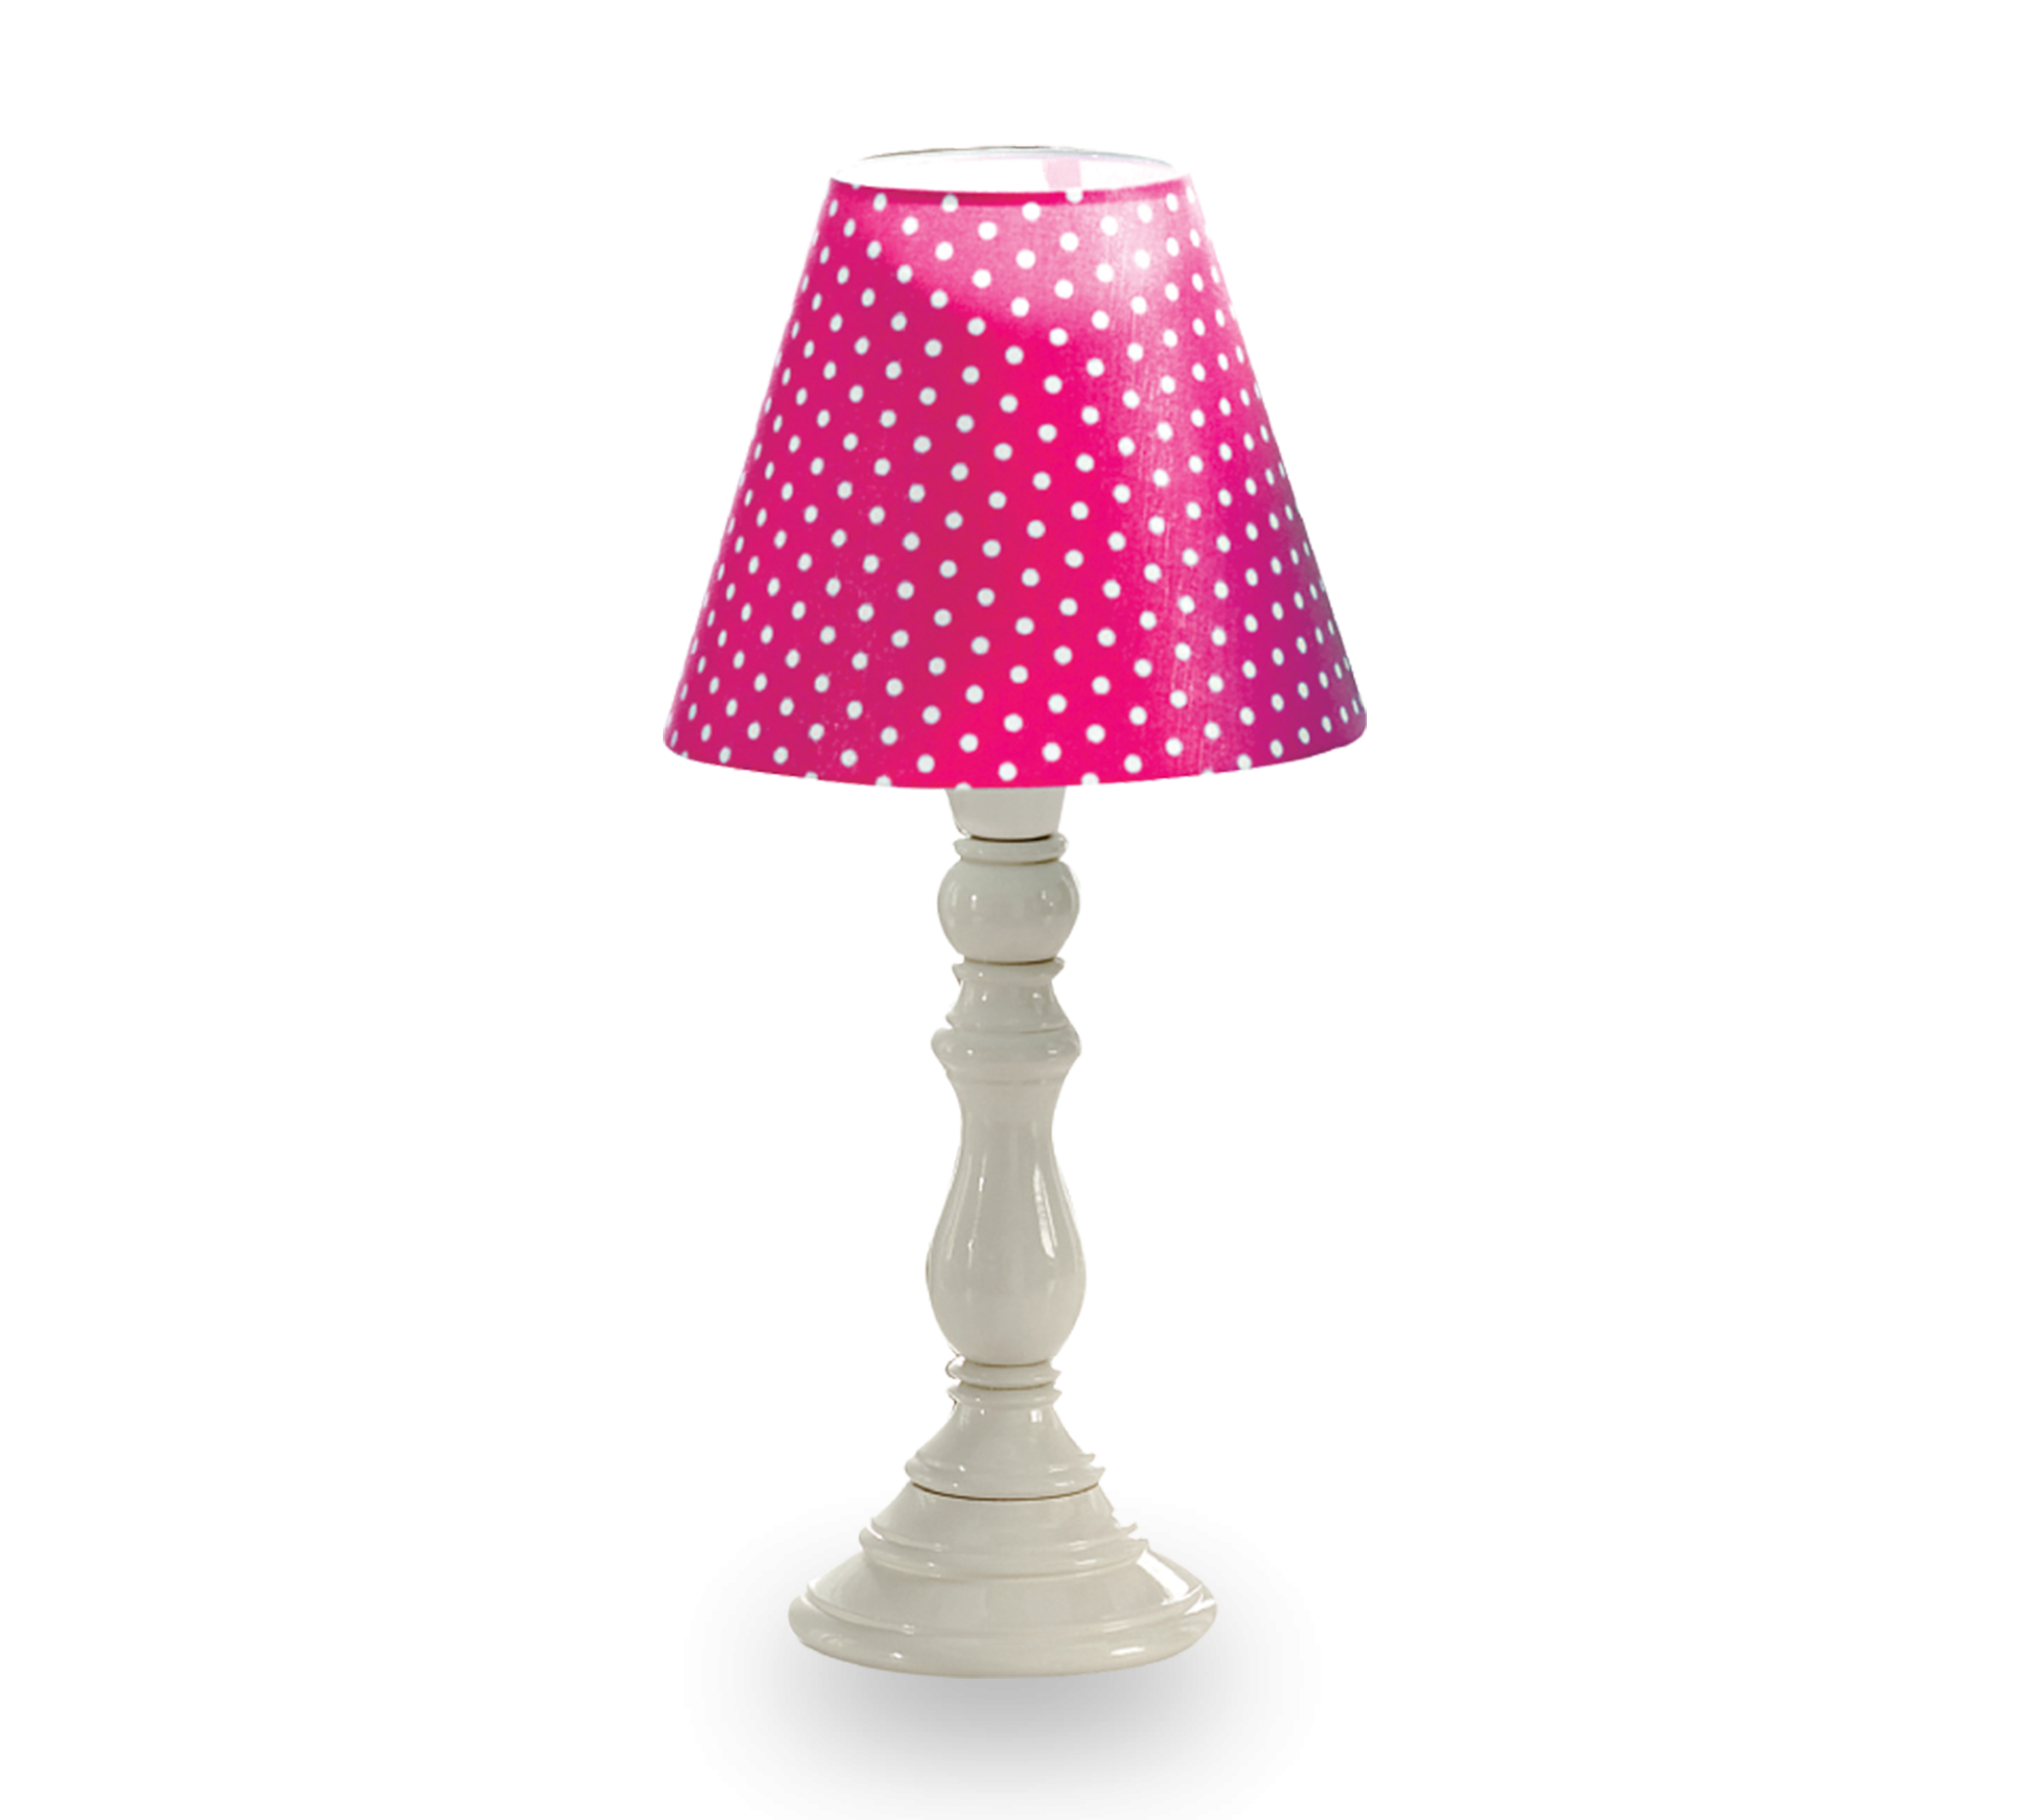 ČILEK - Lampa puntíkovaná růžová